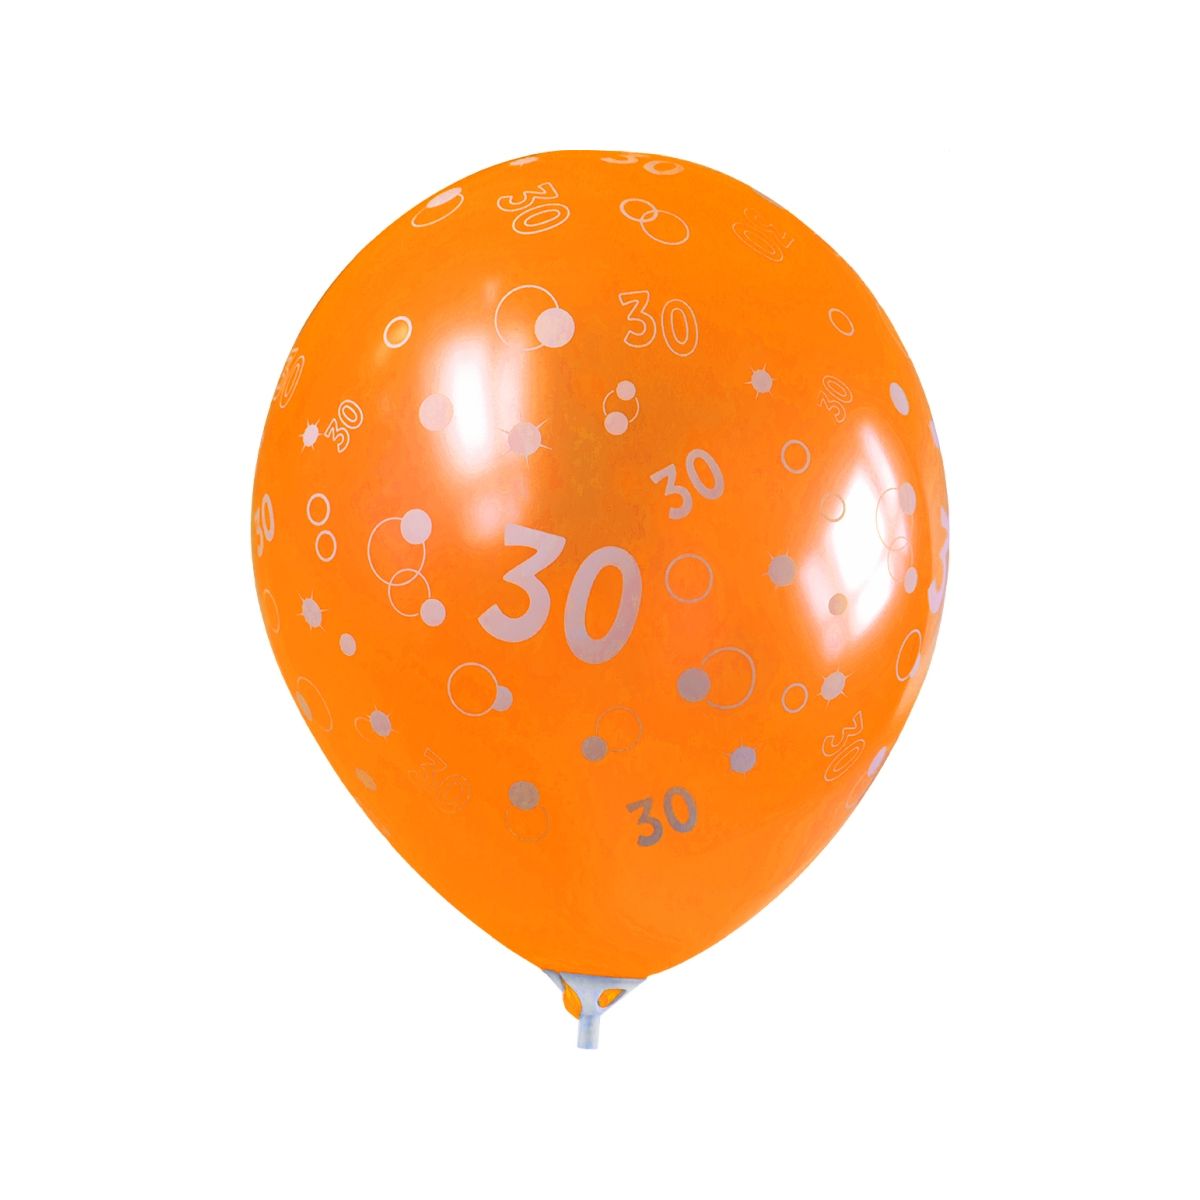 Balon gumowy Amscan 6 szt 30 (996544)